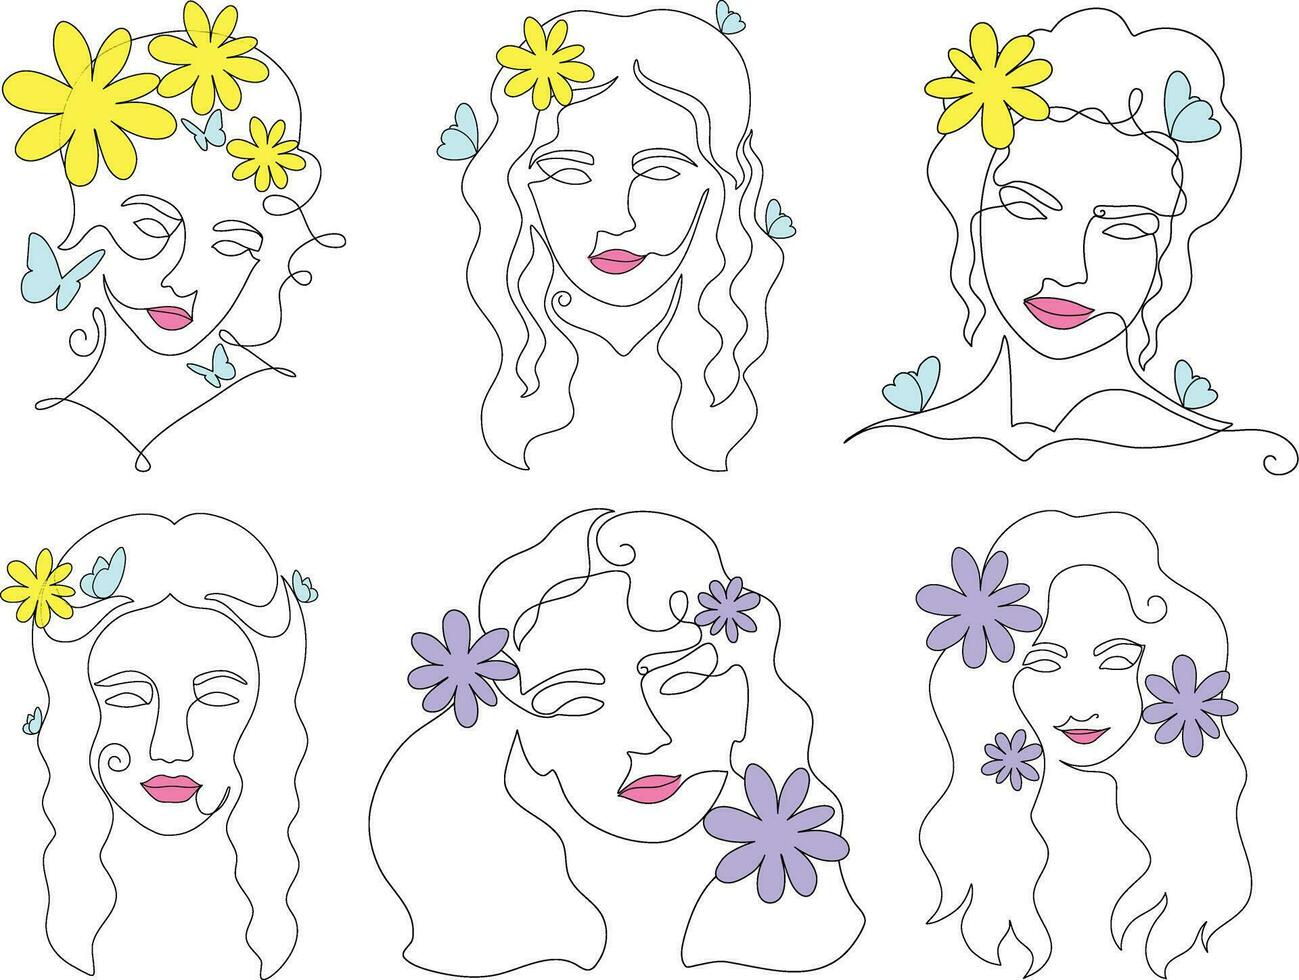 reeks van vrouw gezichten met bloemen. vector illustratie in tekening stijl.